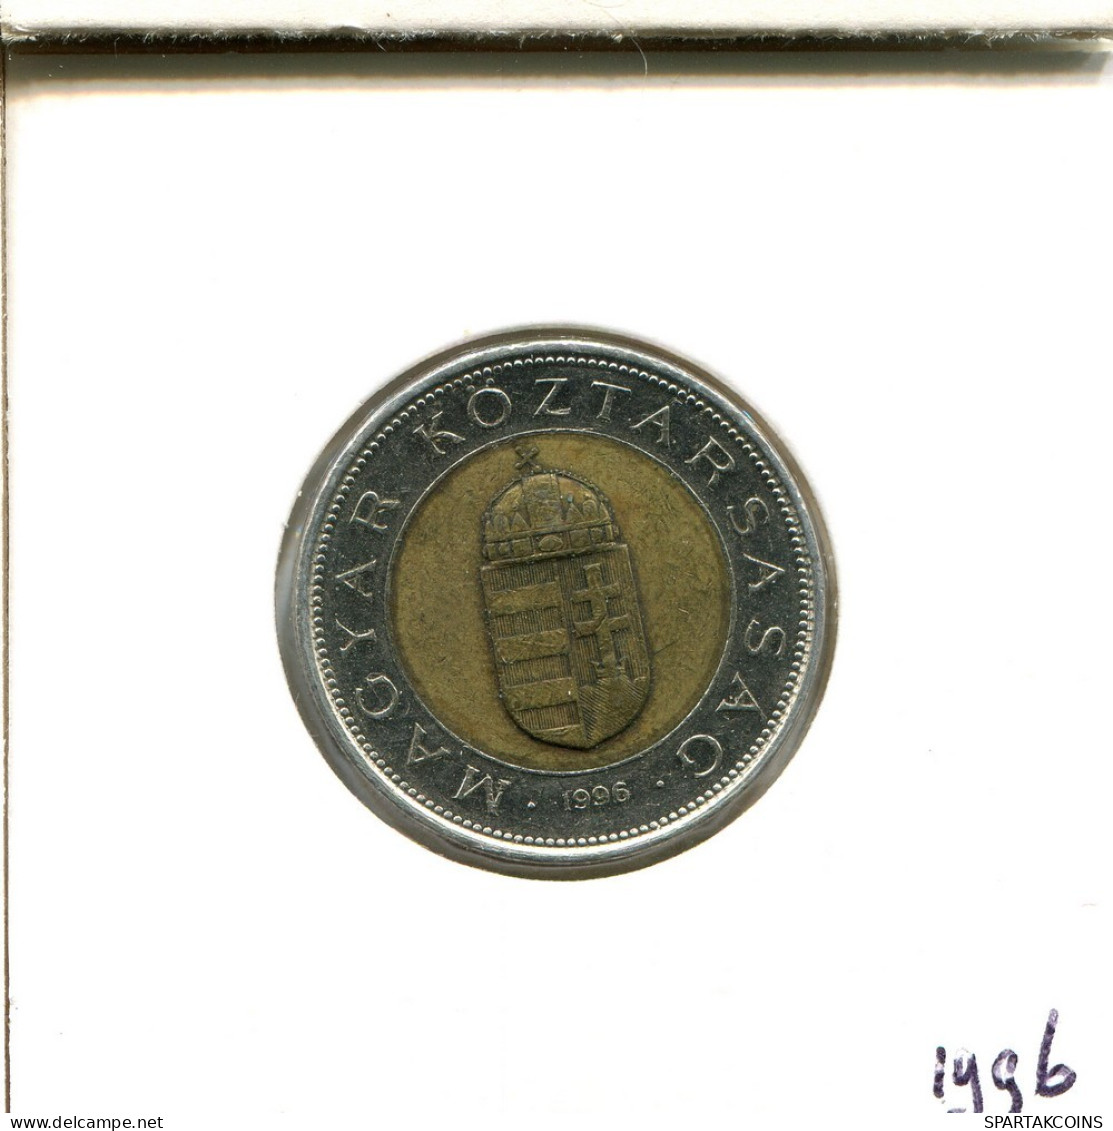 100 FORINT 1996 SIEBENBÜRGEN HUNGARY Münze BIMETALLIC #AS917.D.A - Hungary